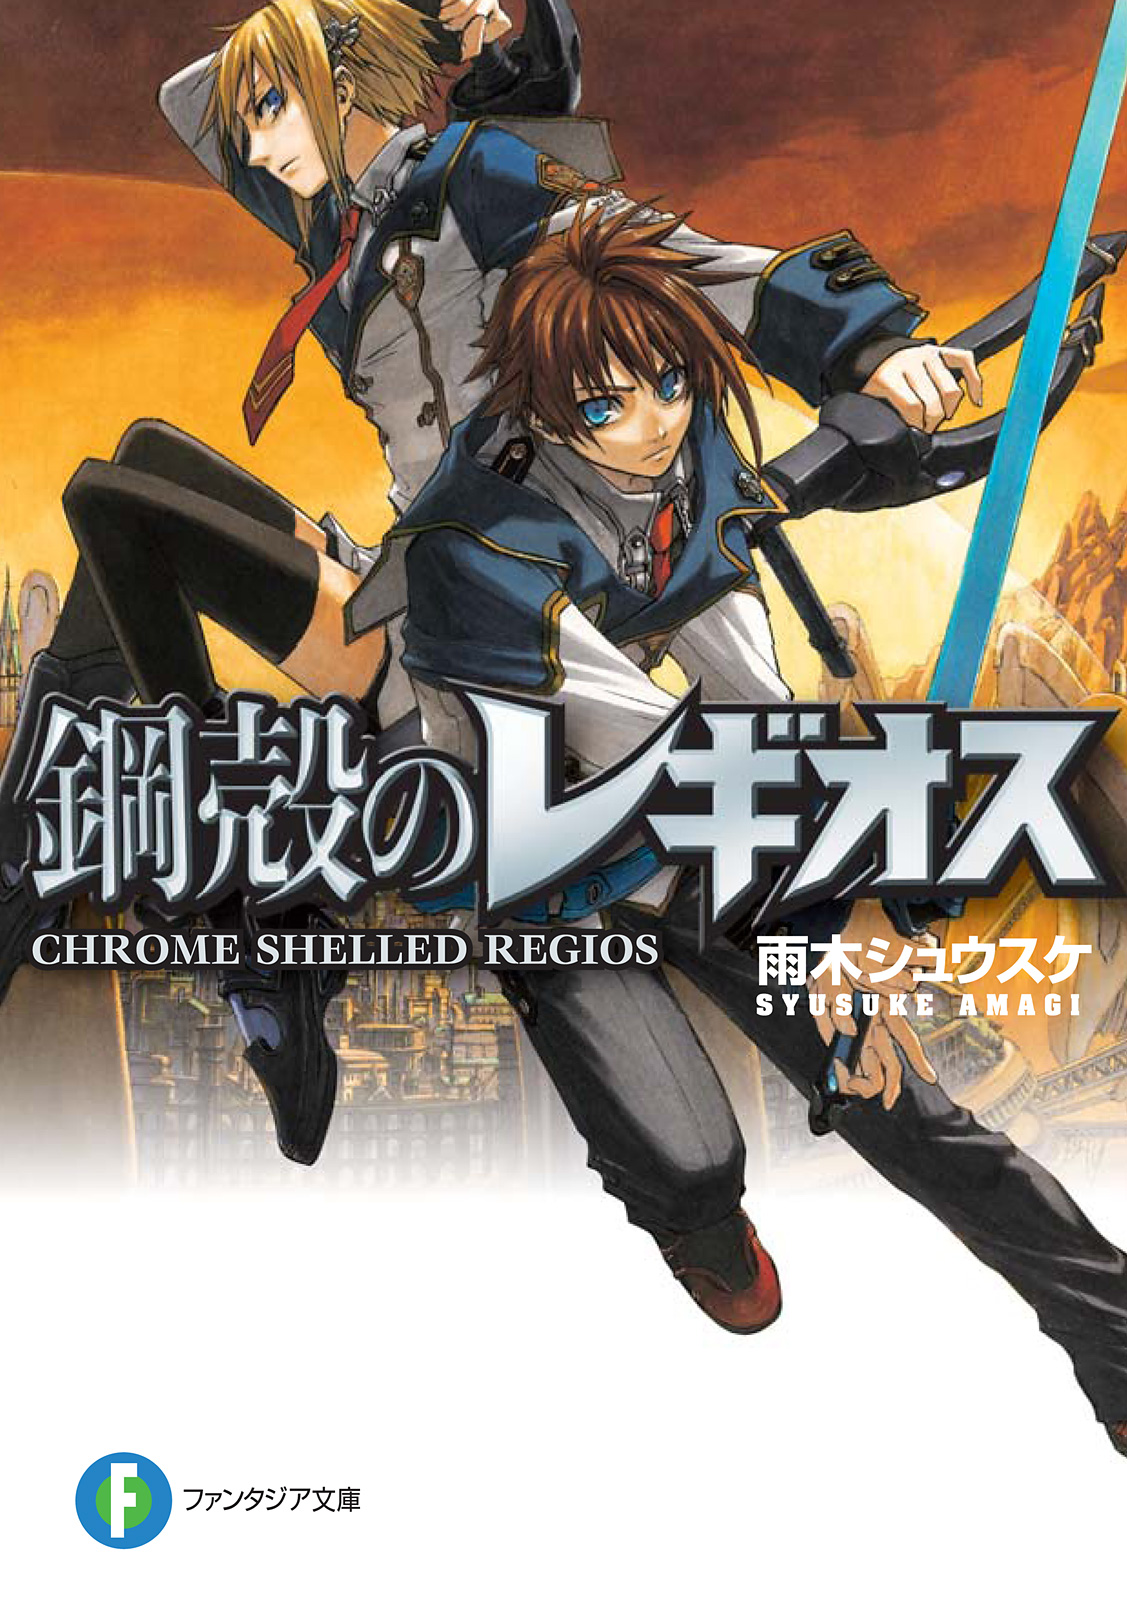 Chrome Shelled Regios:Volume16 Chapter1 - Baka-Tsuki